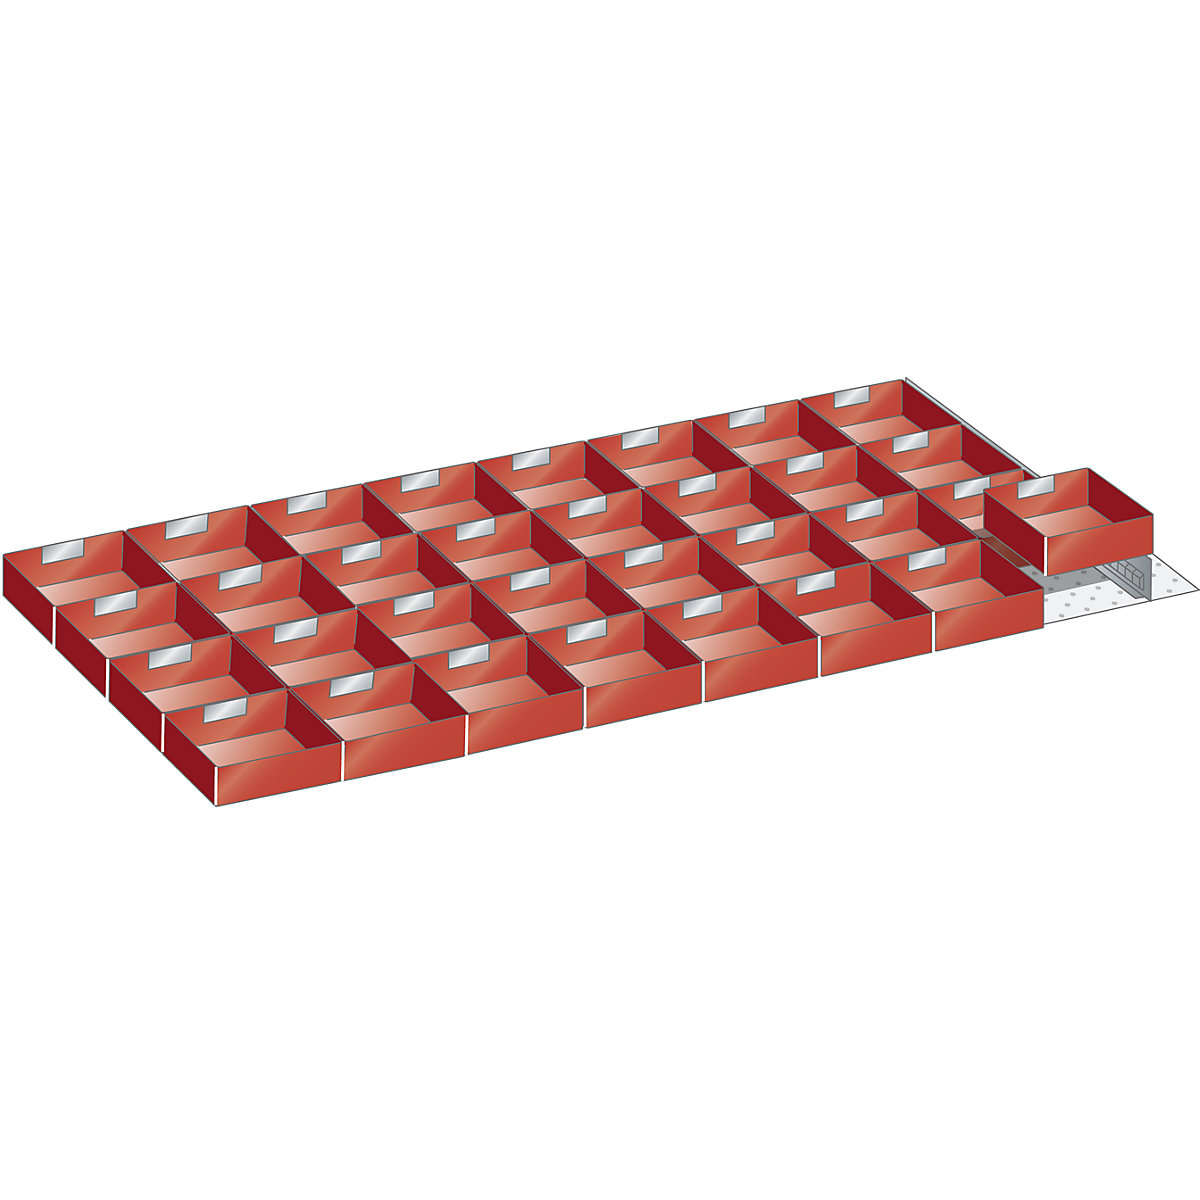 Caixa de encaixe em plástico – LISTA, para armário com dimensões 1431 x 725 mm, para altura das gavetas de 100 mm-3